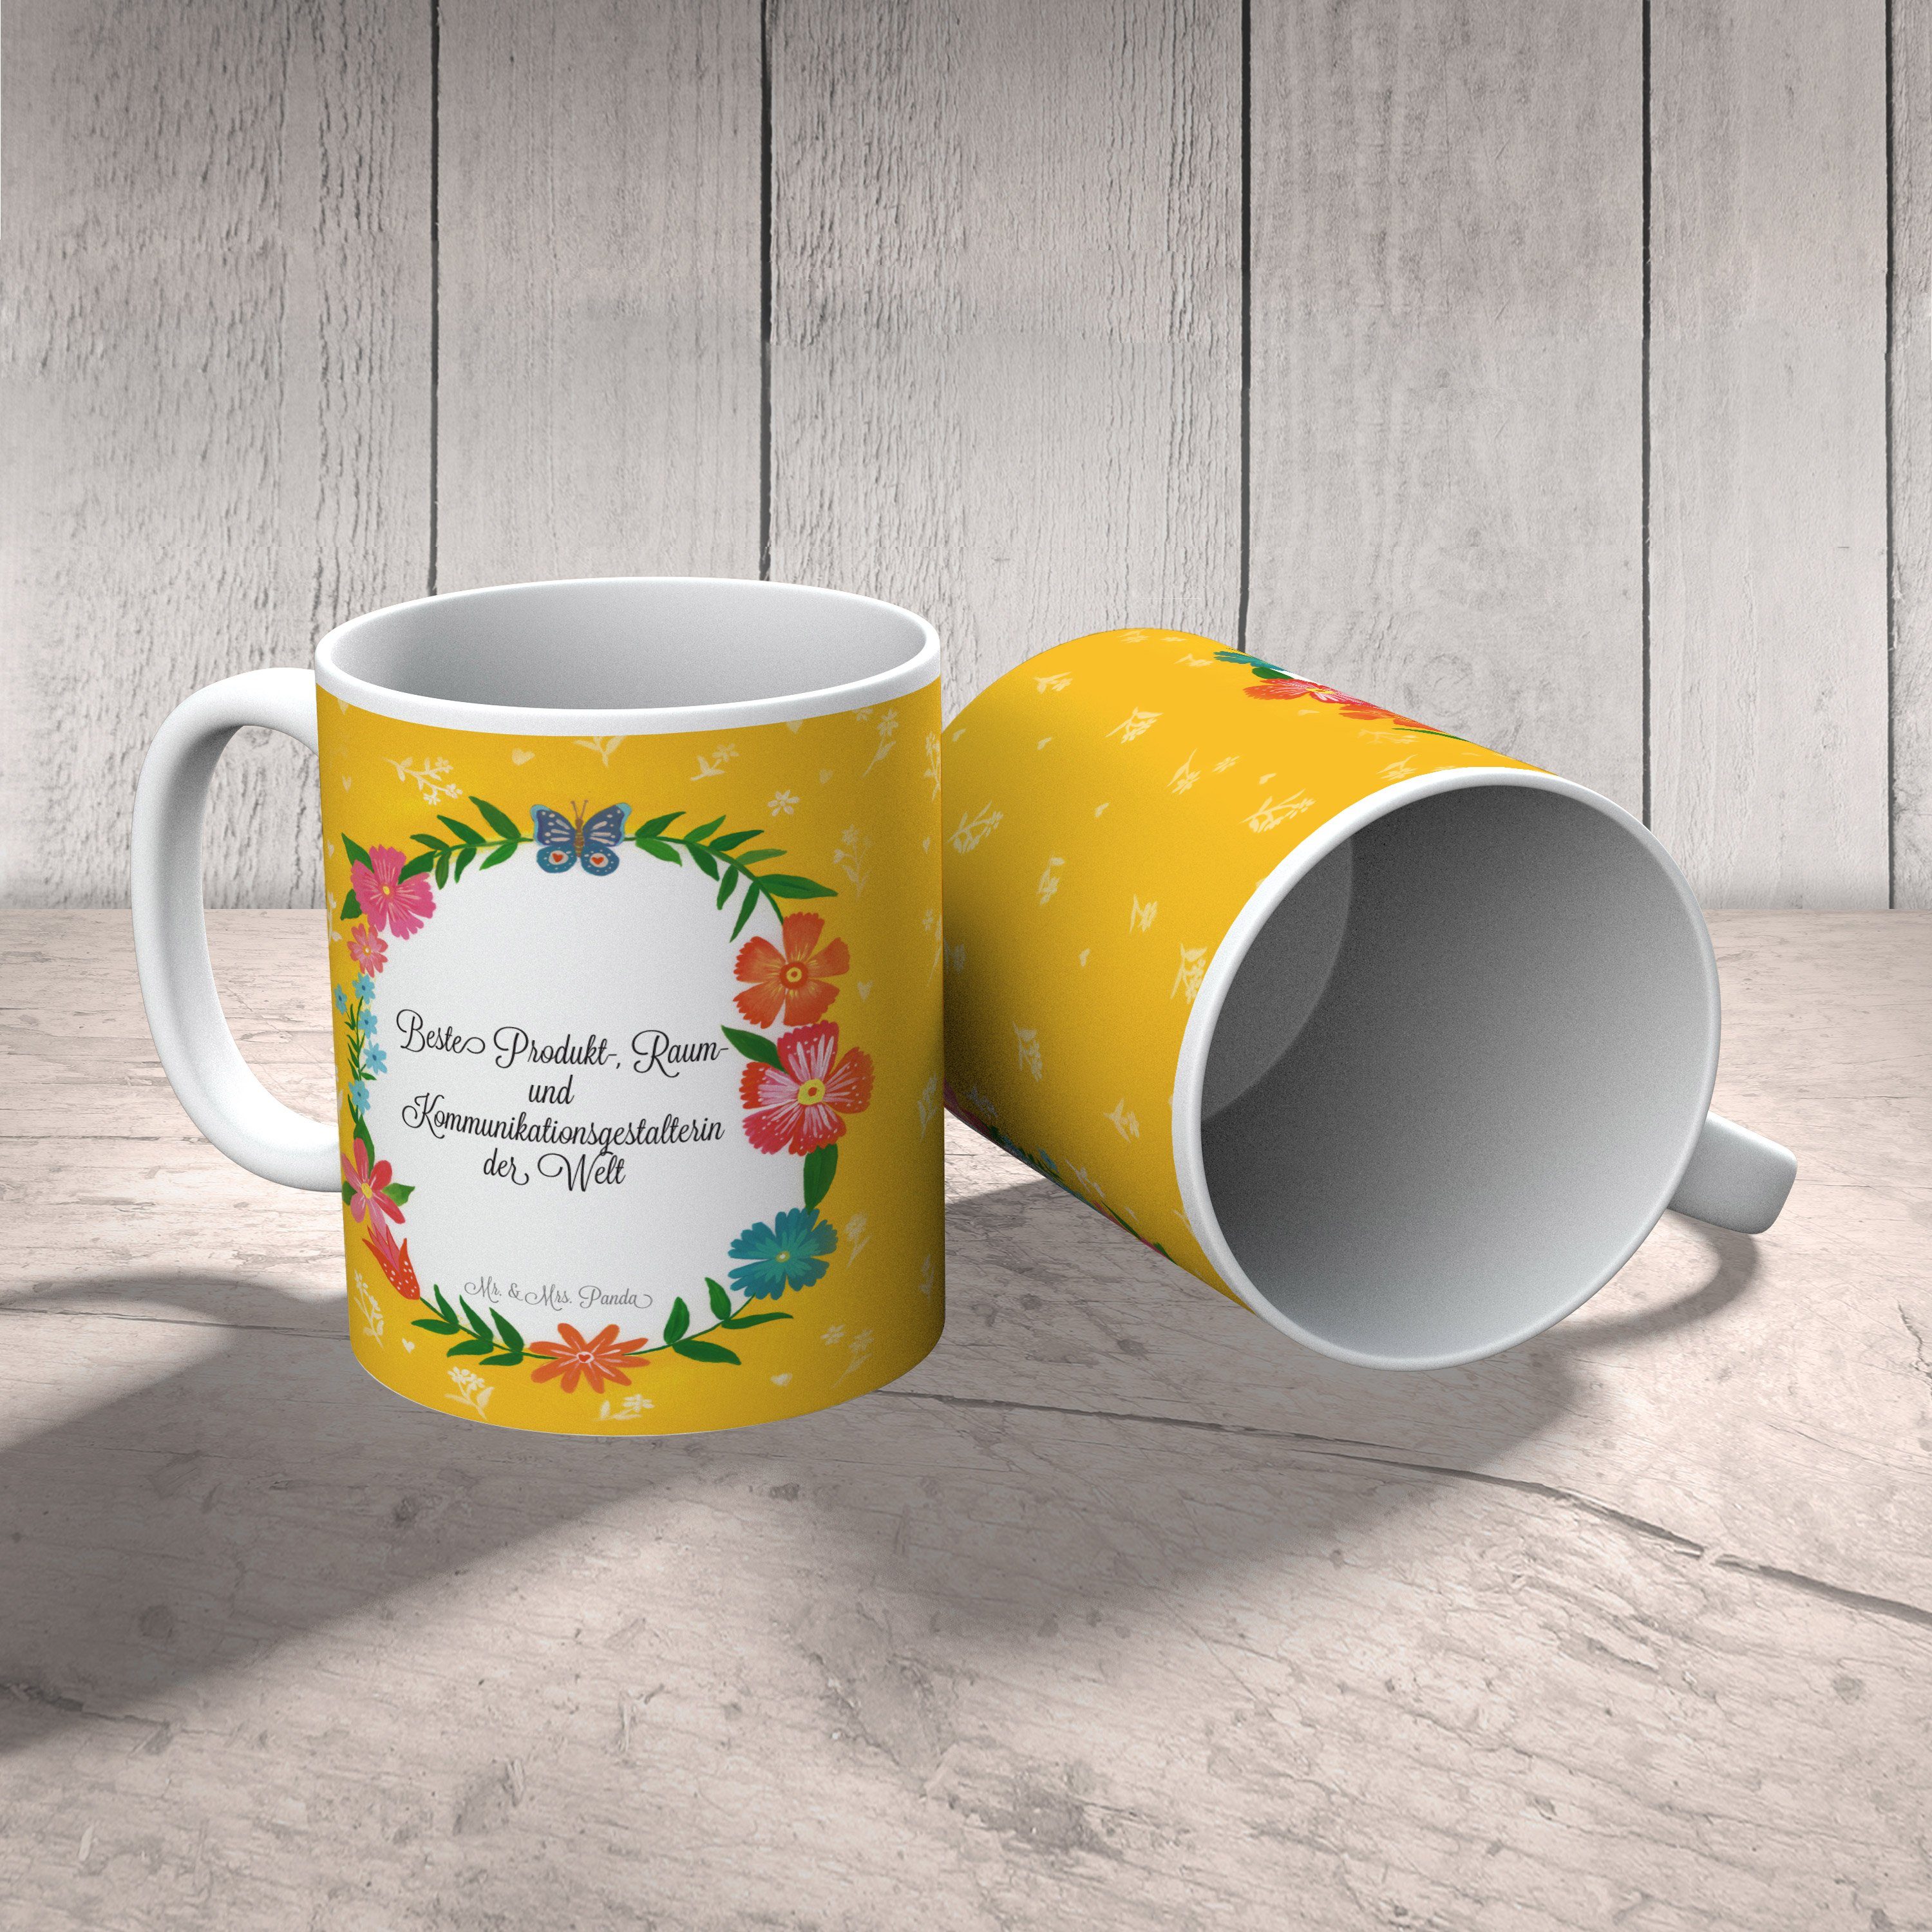 Mr. & Mrs. Keramik - Produkt-, Raum- Berufsschul, Kommunikationsgestalterin Tasse Geschenk, und Panda